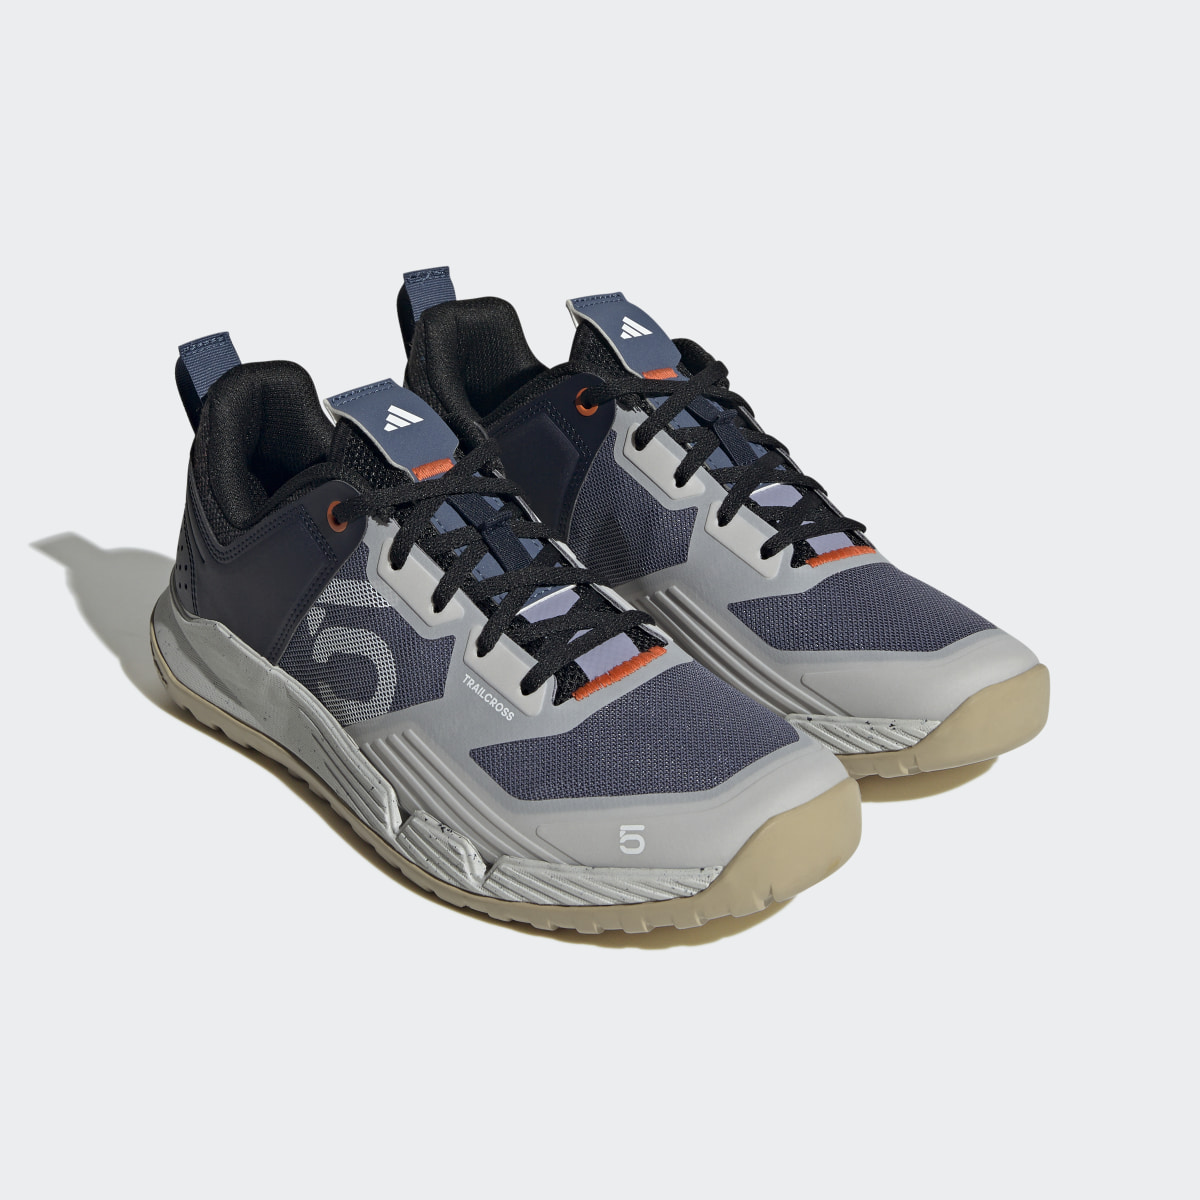 Adidas Five Ten Trailcross XT Shoes. 5